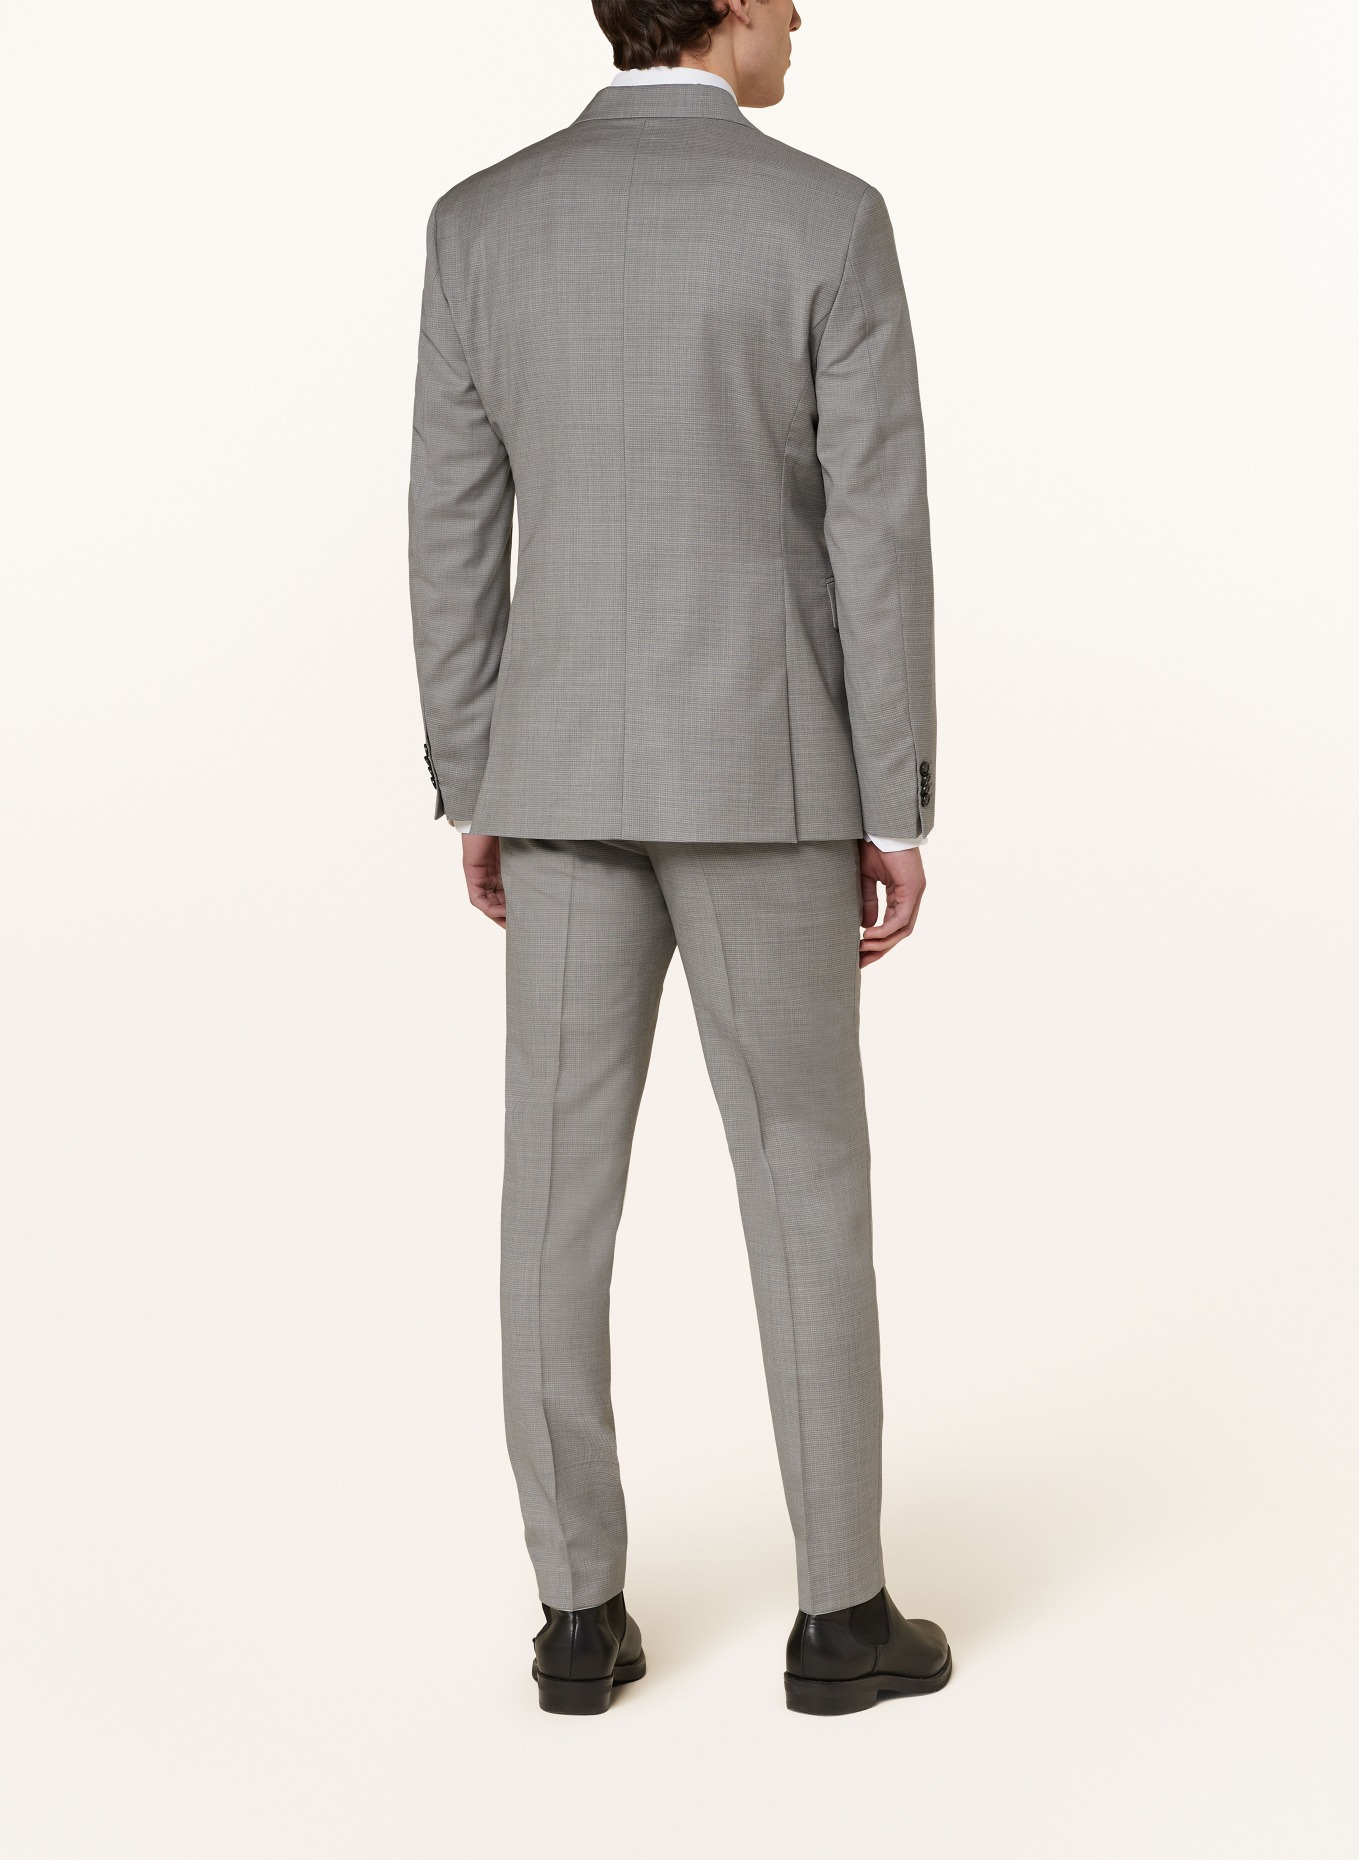 TIGER OF SWEDEN Suit jacket JUSTIN slim fit, Color: M04 Light Grey Melange (Image 3)